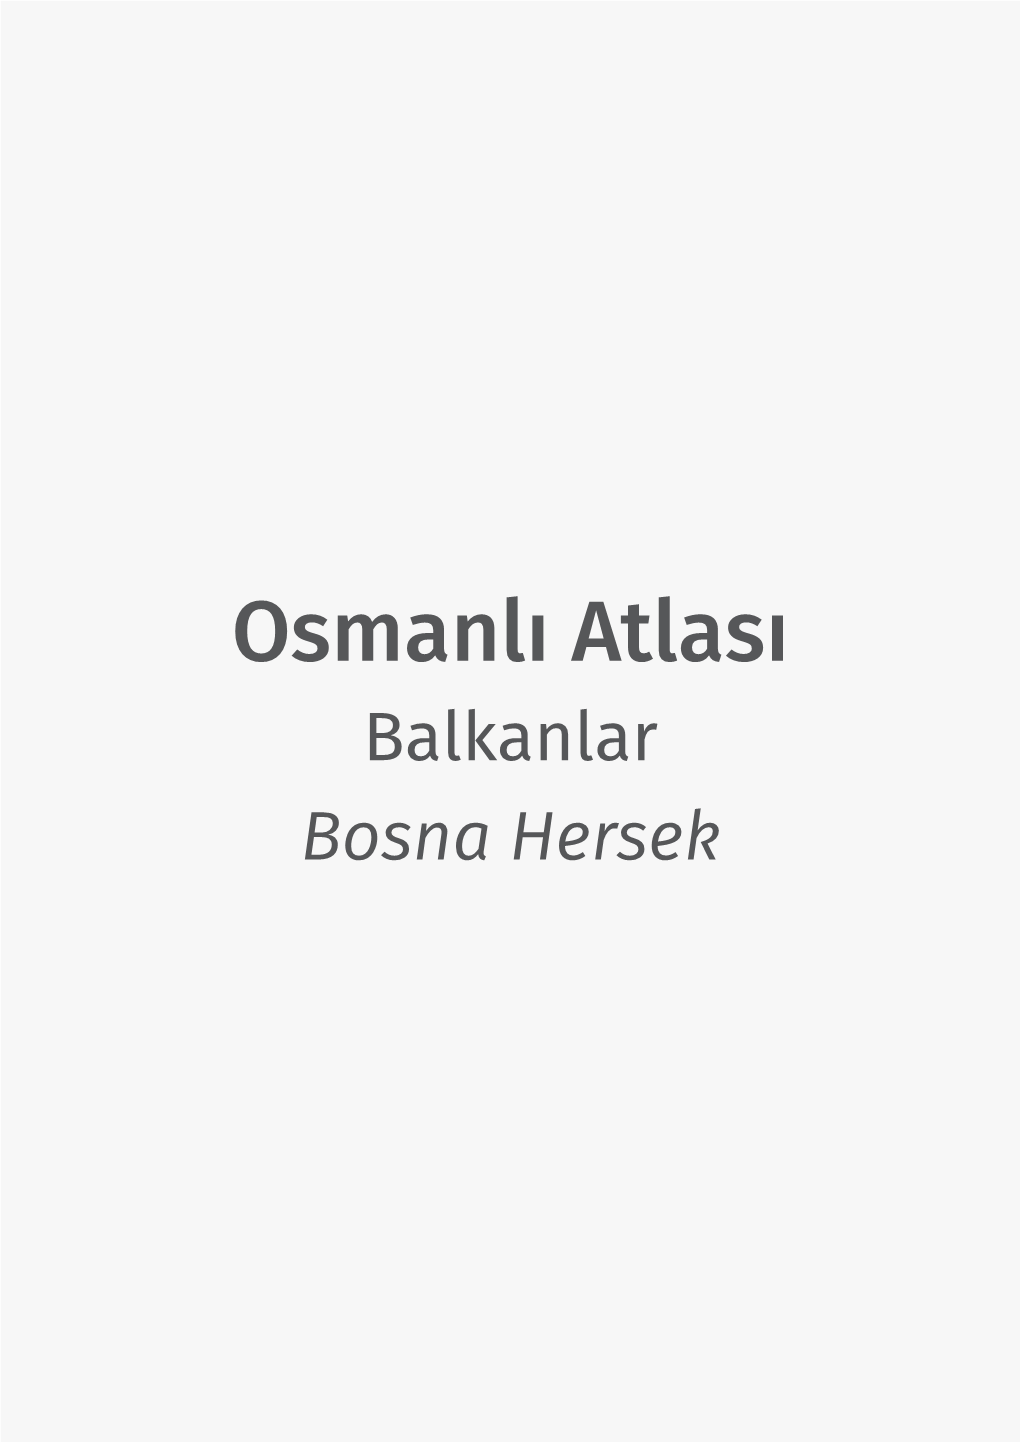 Osmanlı Atlası Balkanlar Bosna Hersek Osmanlı Atlası Projesi